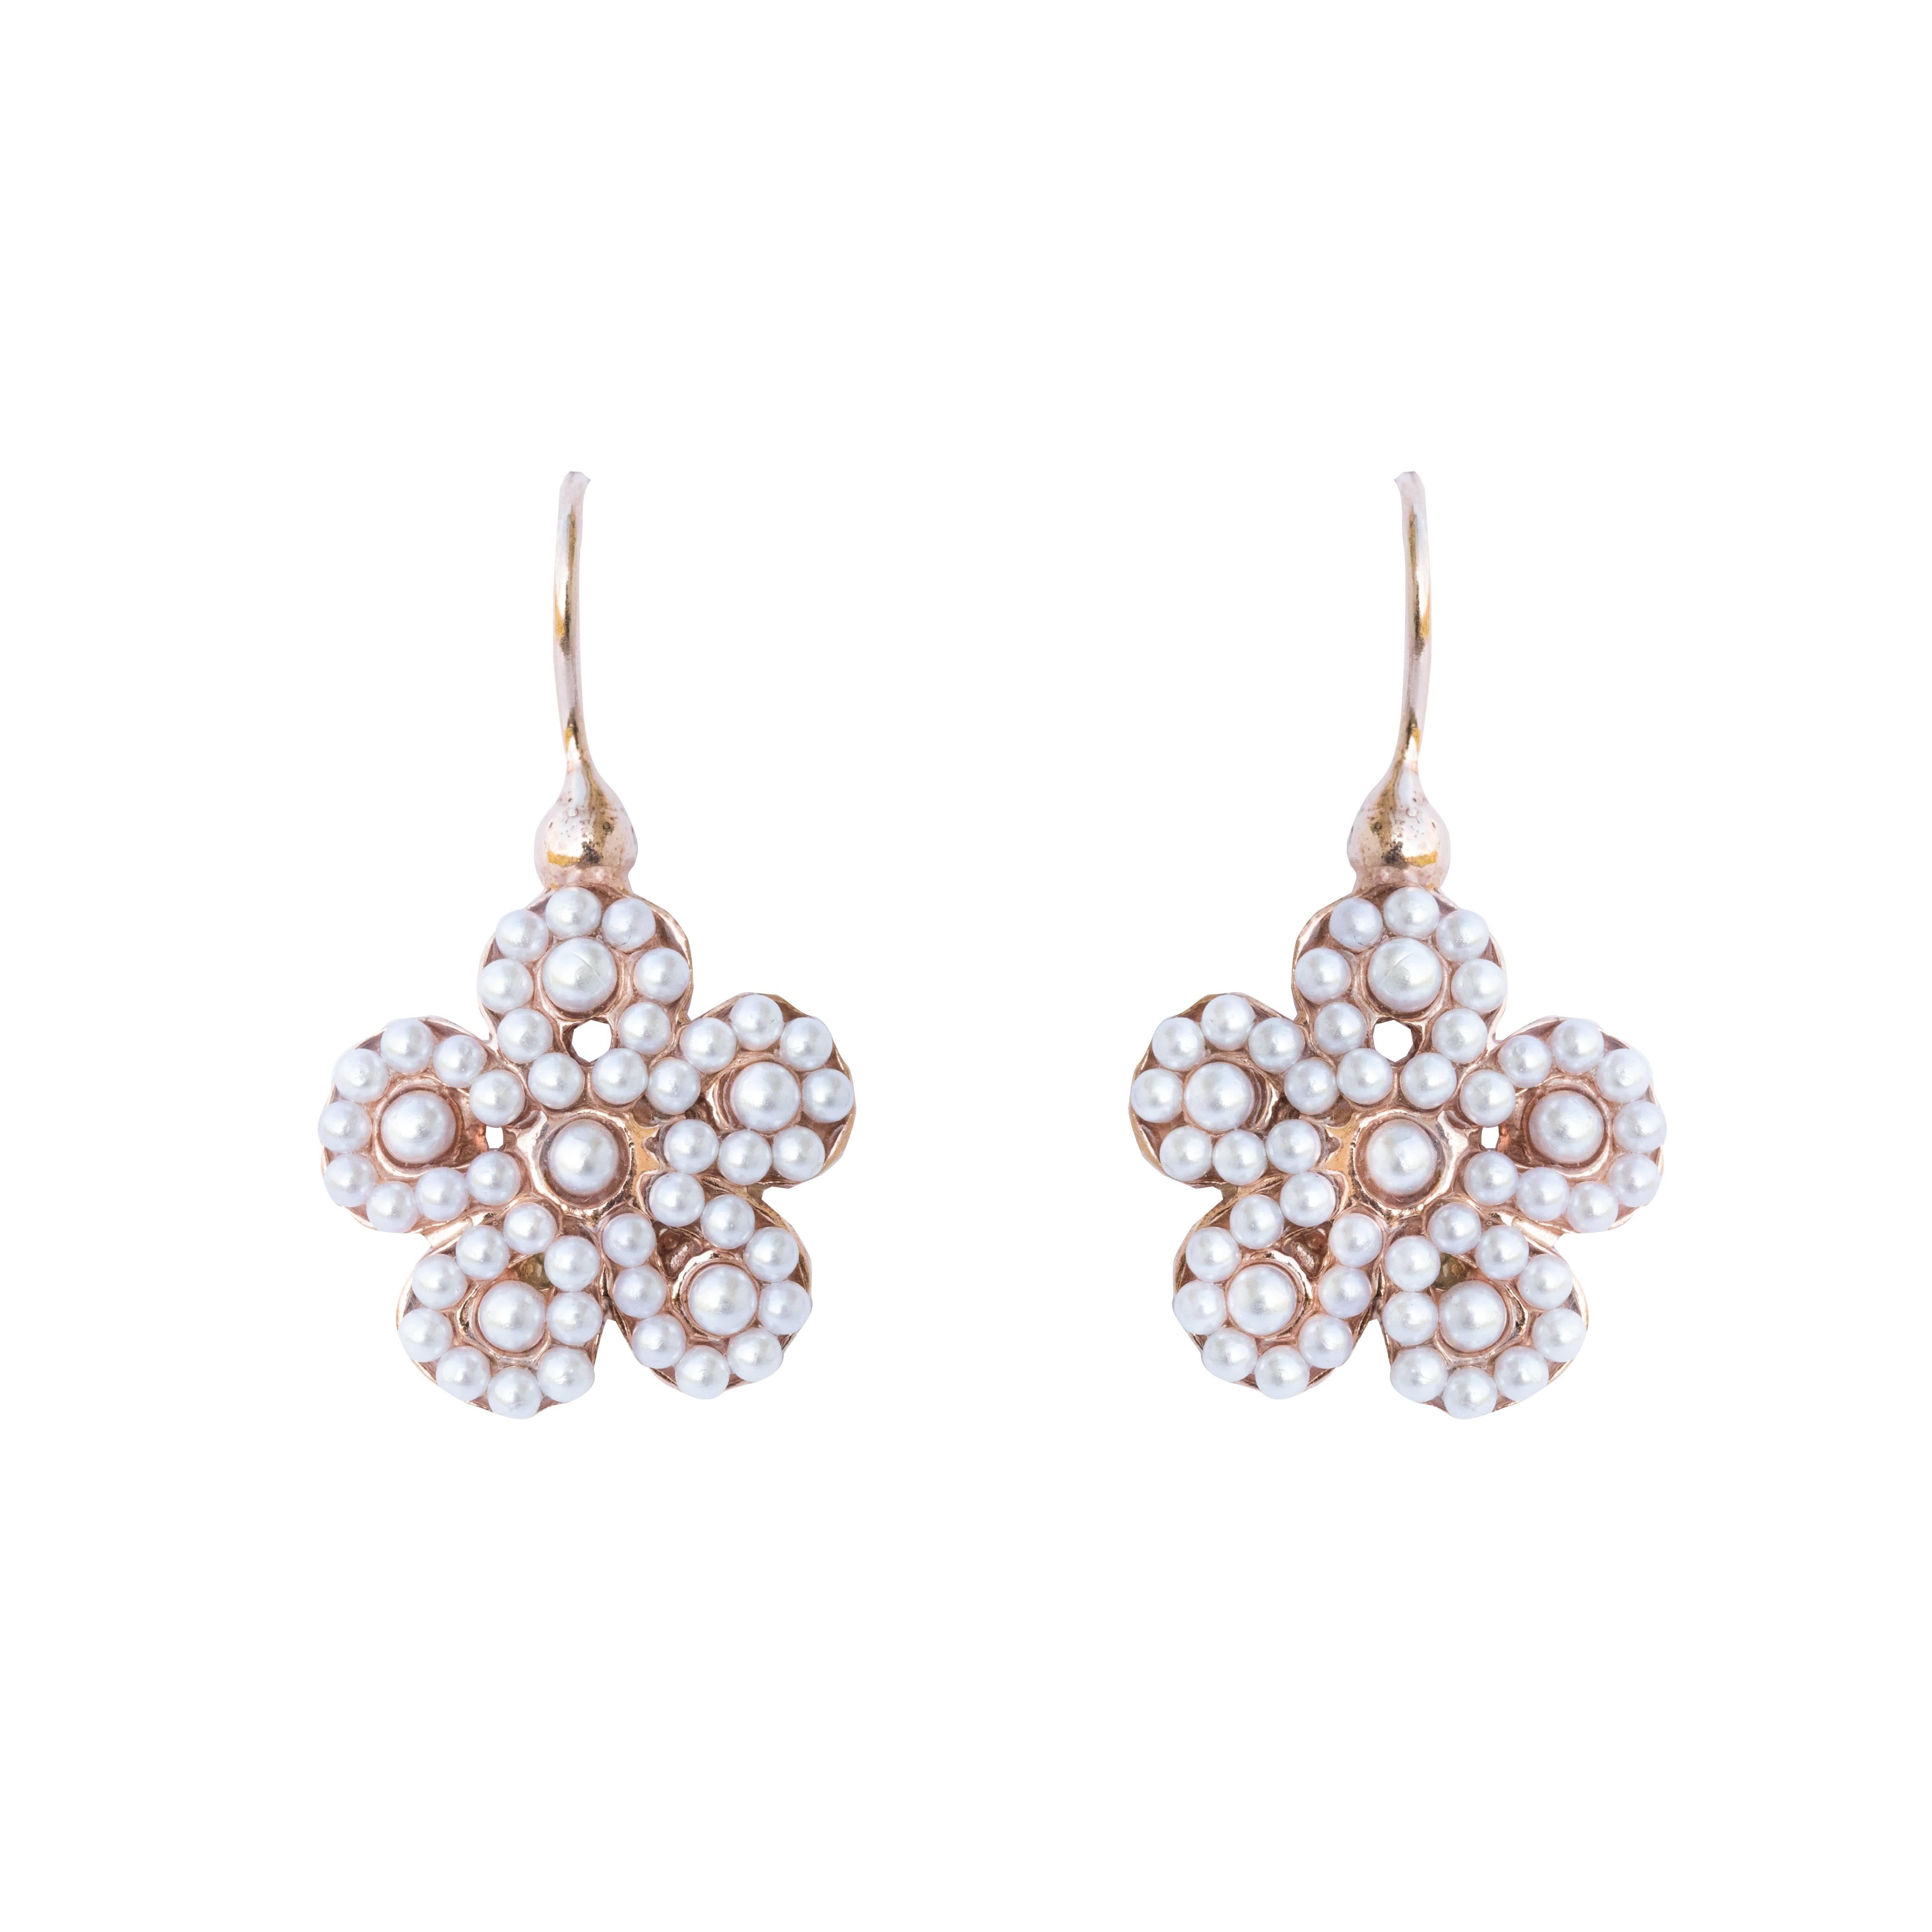 Italian Flower Pearl Vermeil Drop Earrings